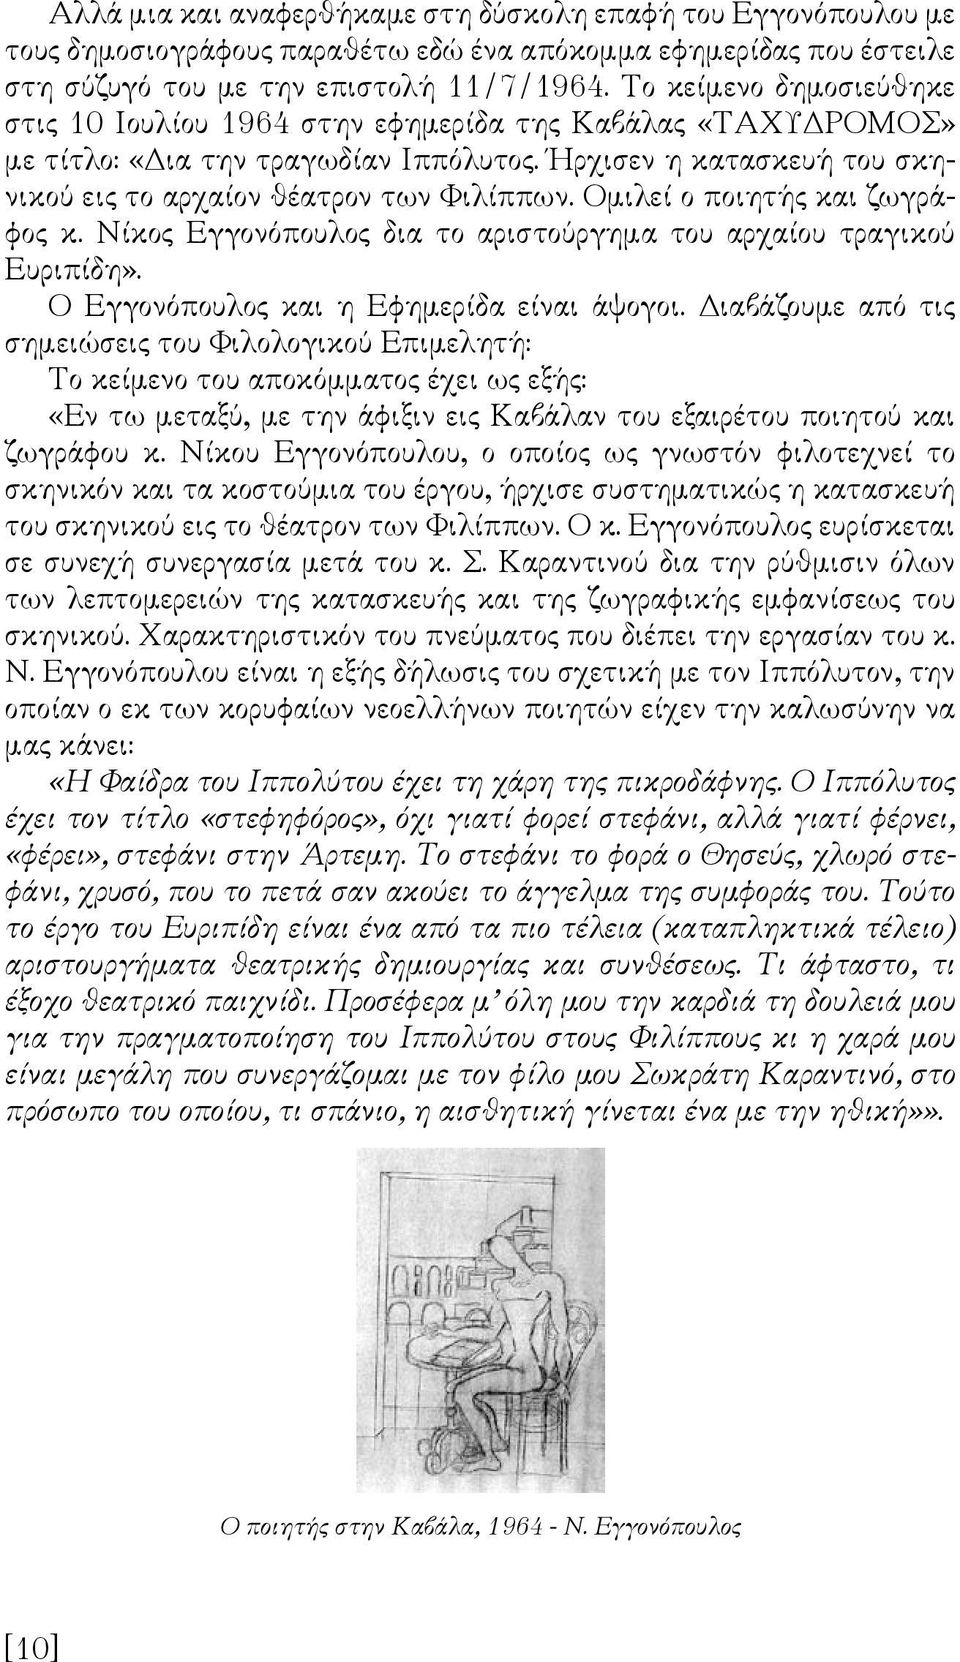 Ομιλεί ο ποιητής και ζωγράφος κ. Νίκος Εγγονόπουλος δια το αριστούργημα του αρχαίου τραγικού Ευριπίδη». Ο Εγγονόπουλος και η Εφημερίδα είναι άψογοι.